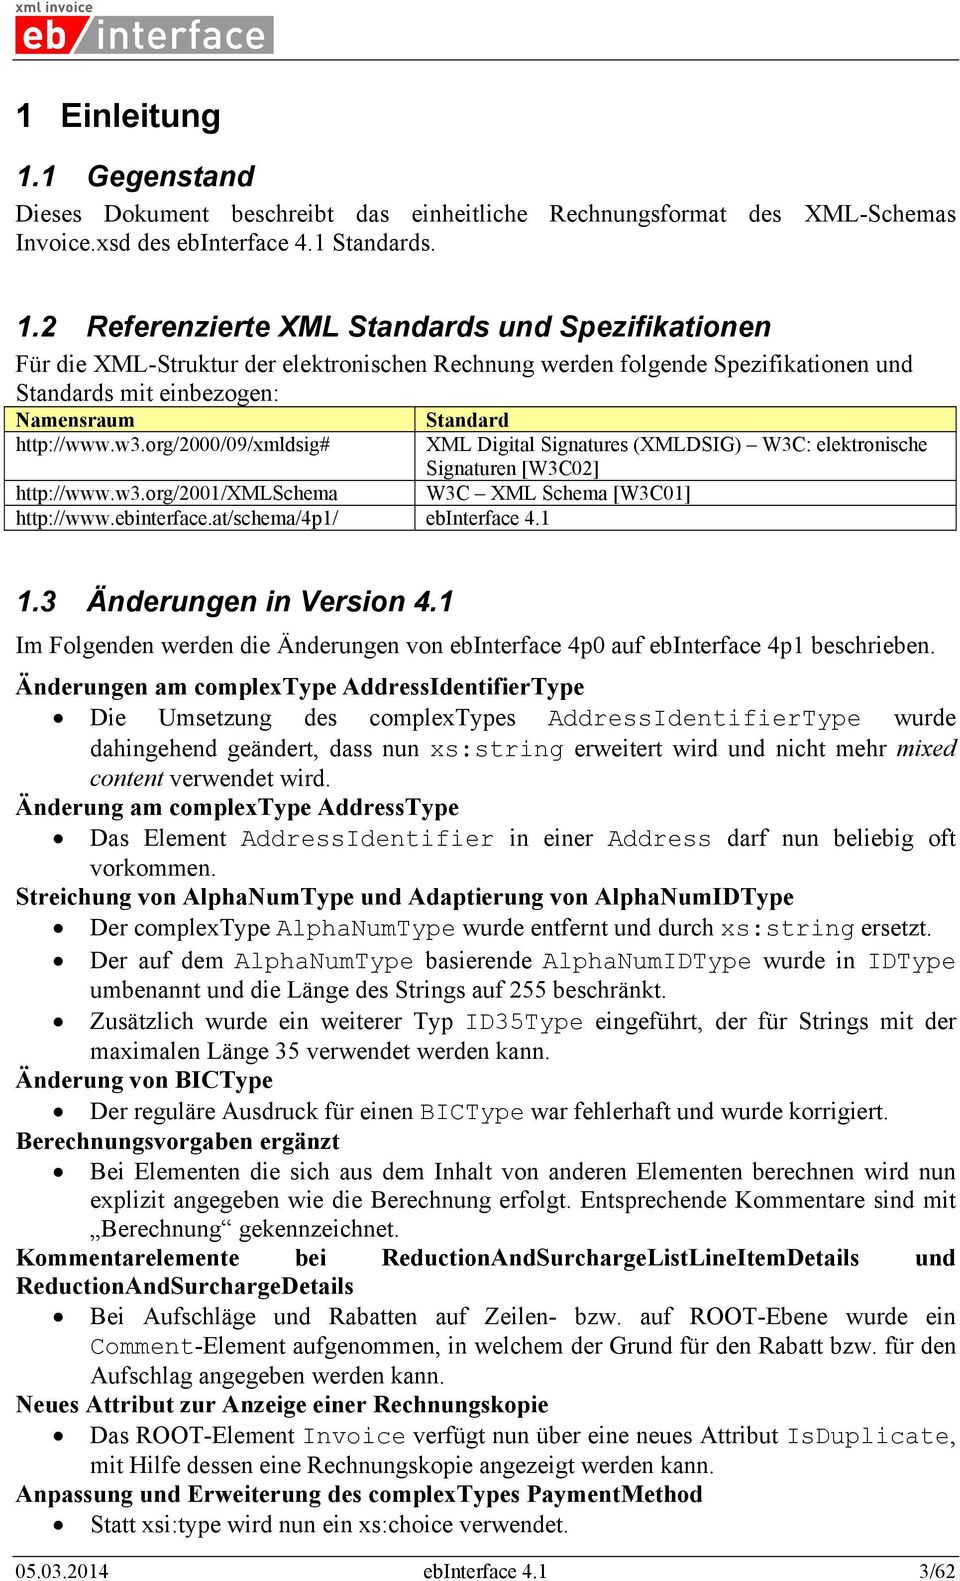 2 Referenzierte XML Standards und Spezifikationen Für die XML-Struktur der elektronischen Rechnung werden folgende Spezifikationen und Standards mit einbezogen: Namensraum Standard http://www.w3.